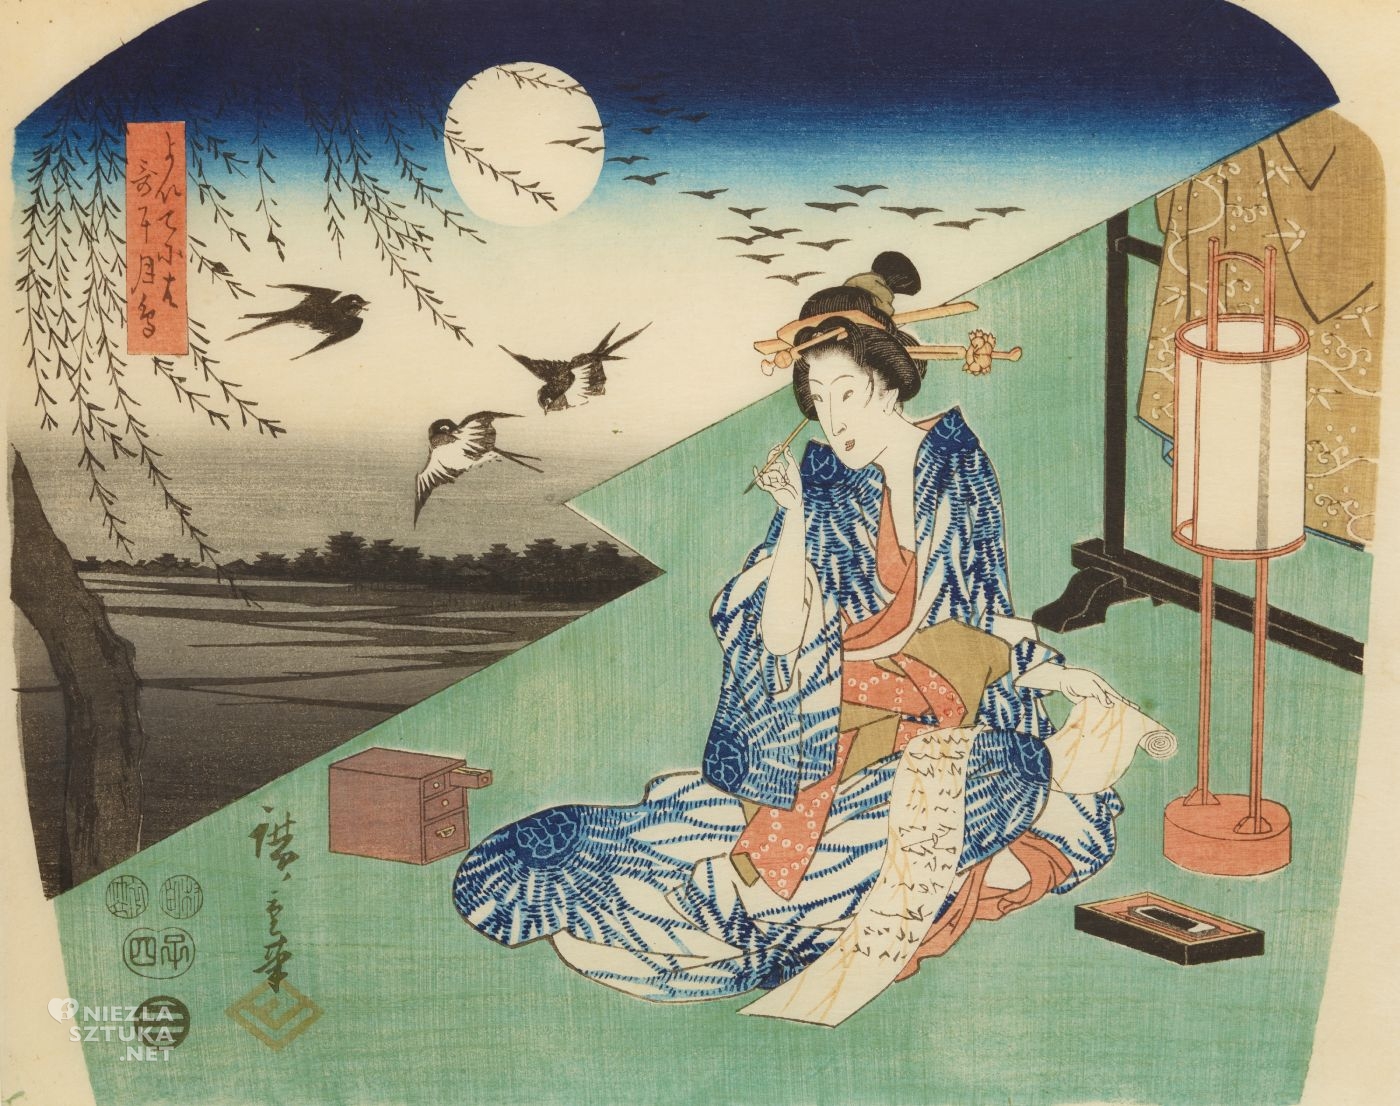 Utagawa Hiroshige, Księżyc i ptaki, Kobieta pisząca list, grafika artystyczna, drzeworyt, sztuka, sztuka japońska, ukiyo-e, drzeworyty japońskie, niezła sztuka